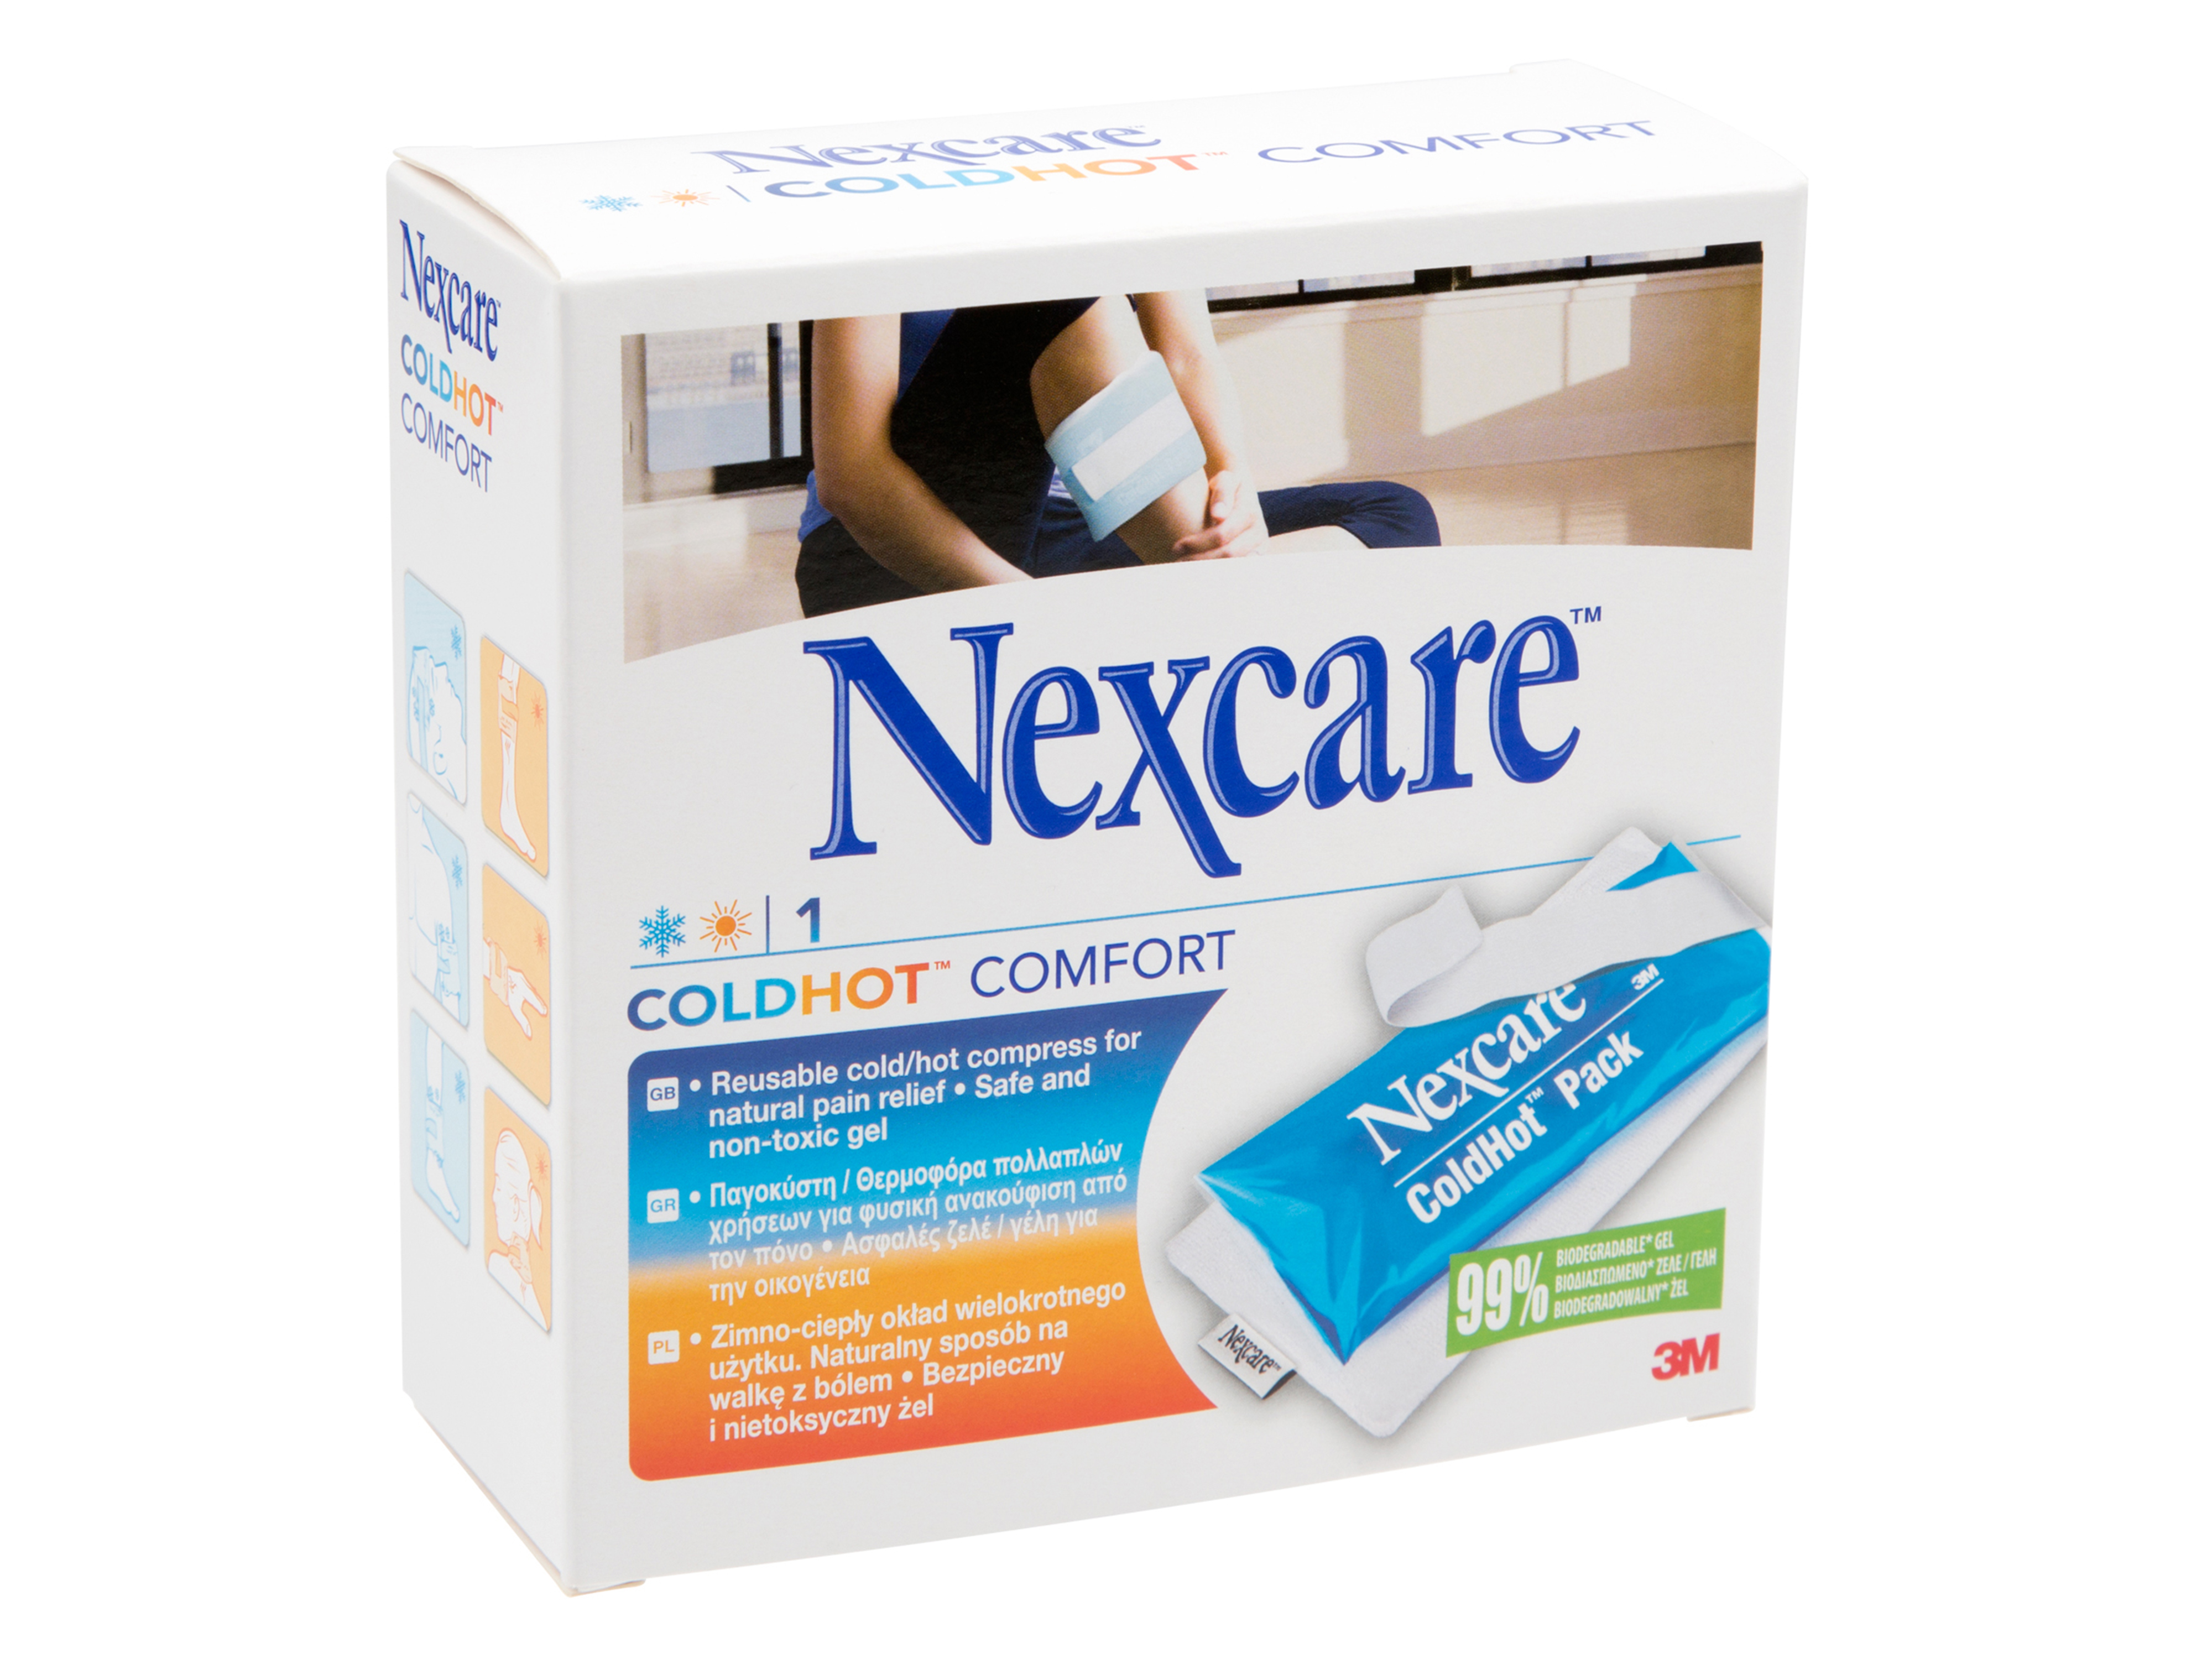 Nexcare ColdHot comfort kulde & varme, 1 stk.